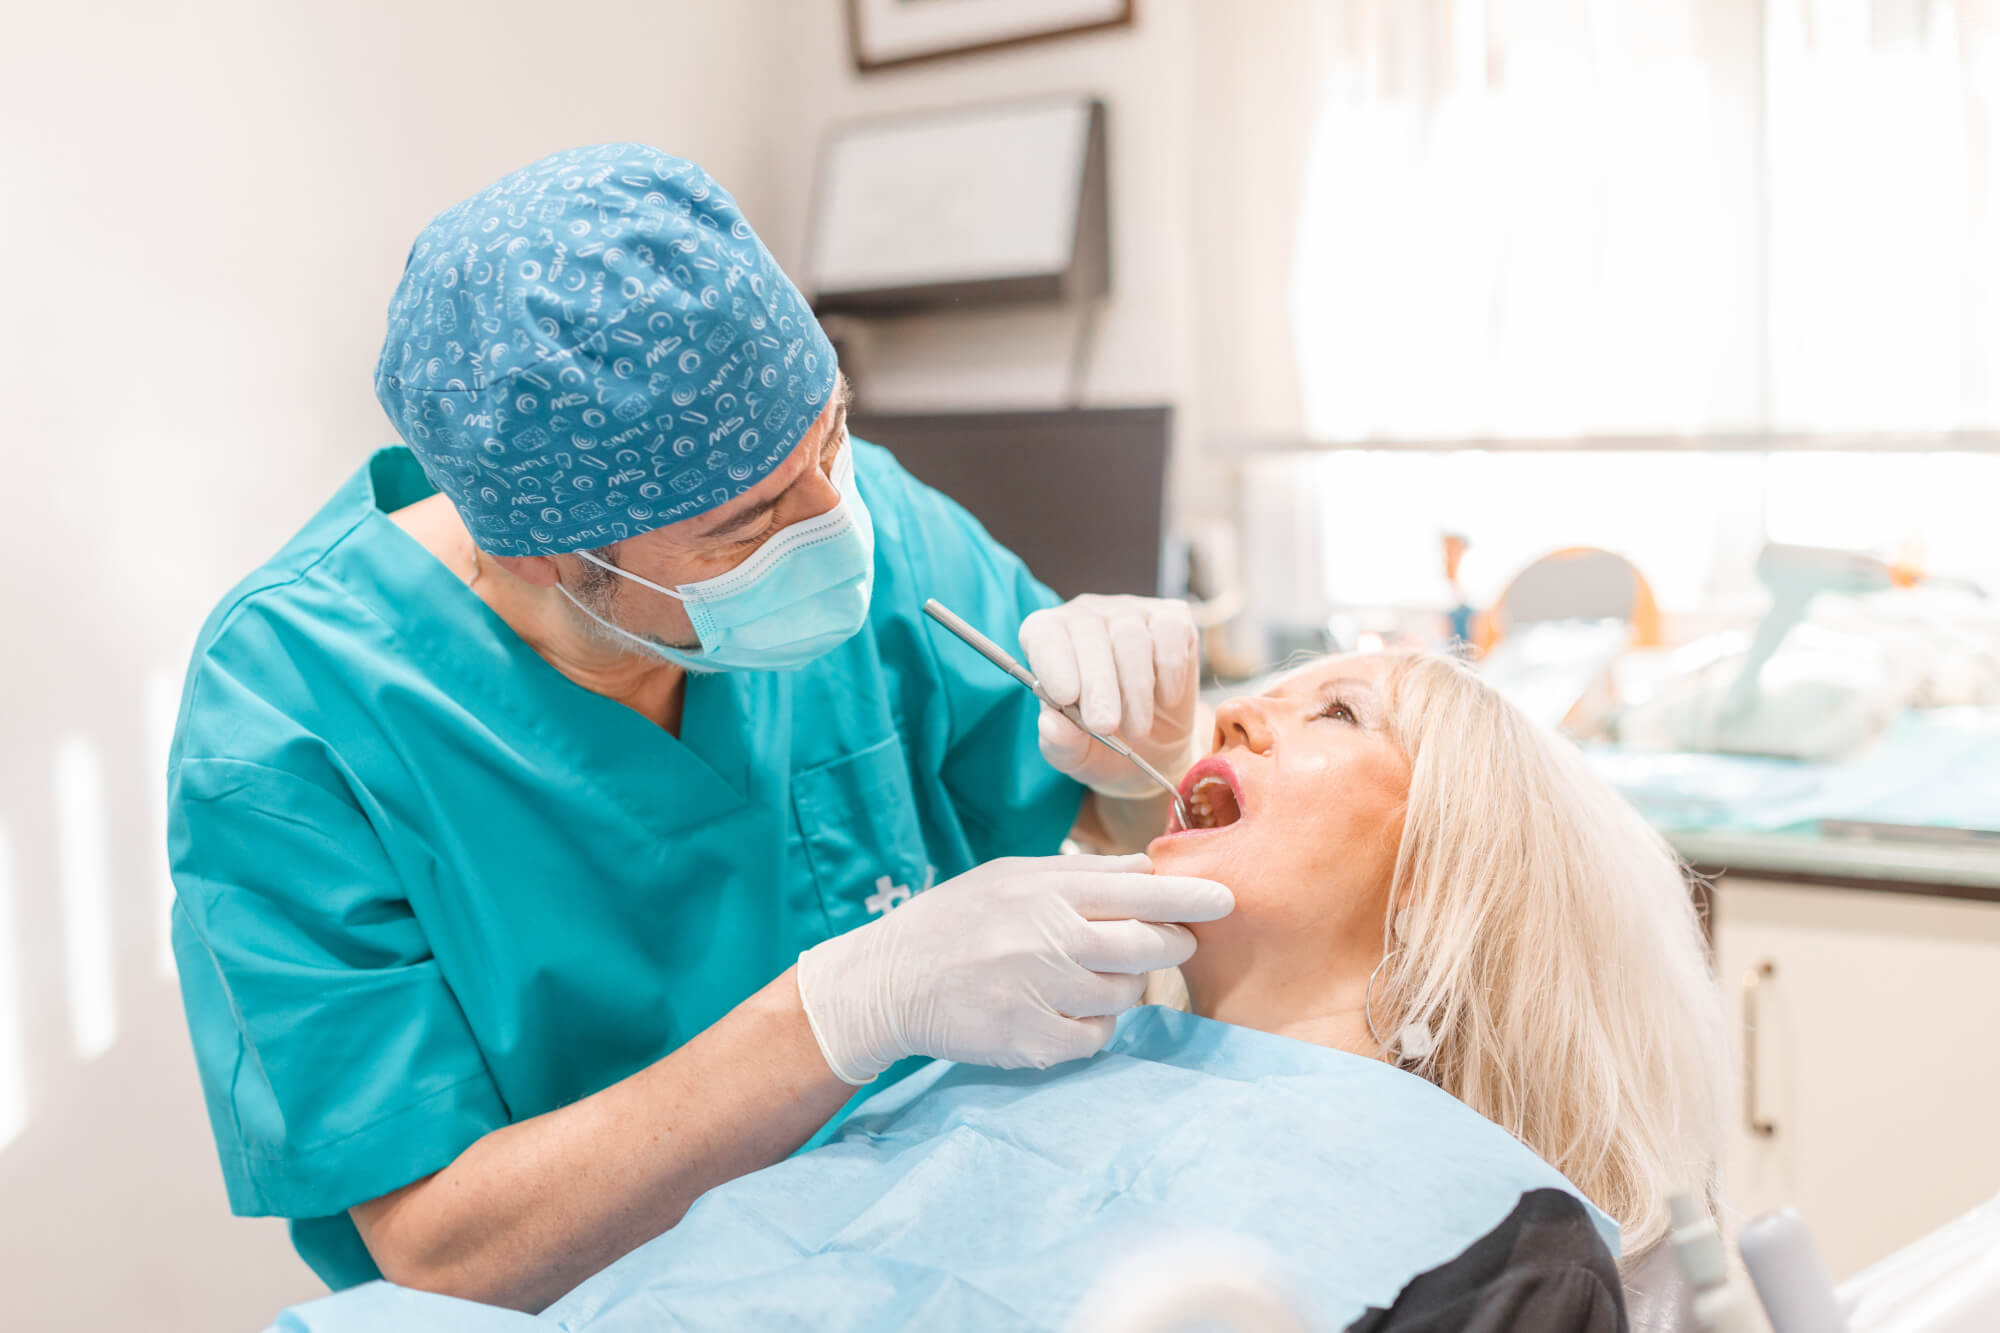 Mantenimiento de los implantes dentales tanto a nivel profesional como en casa